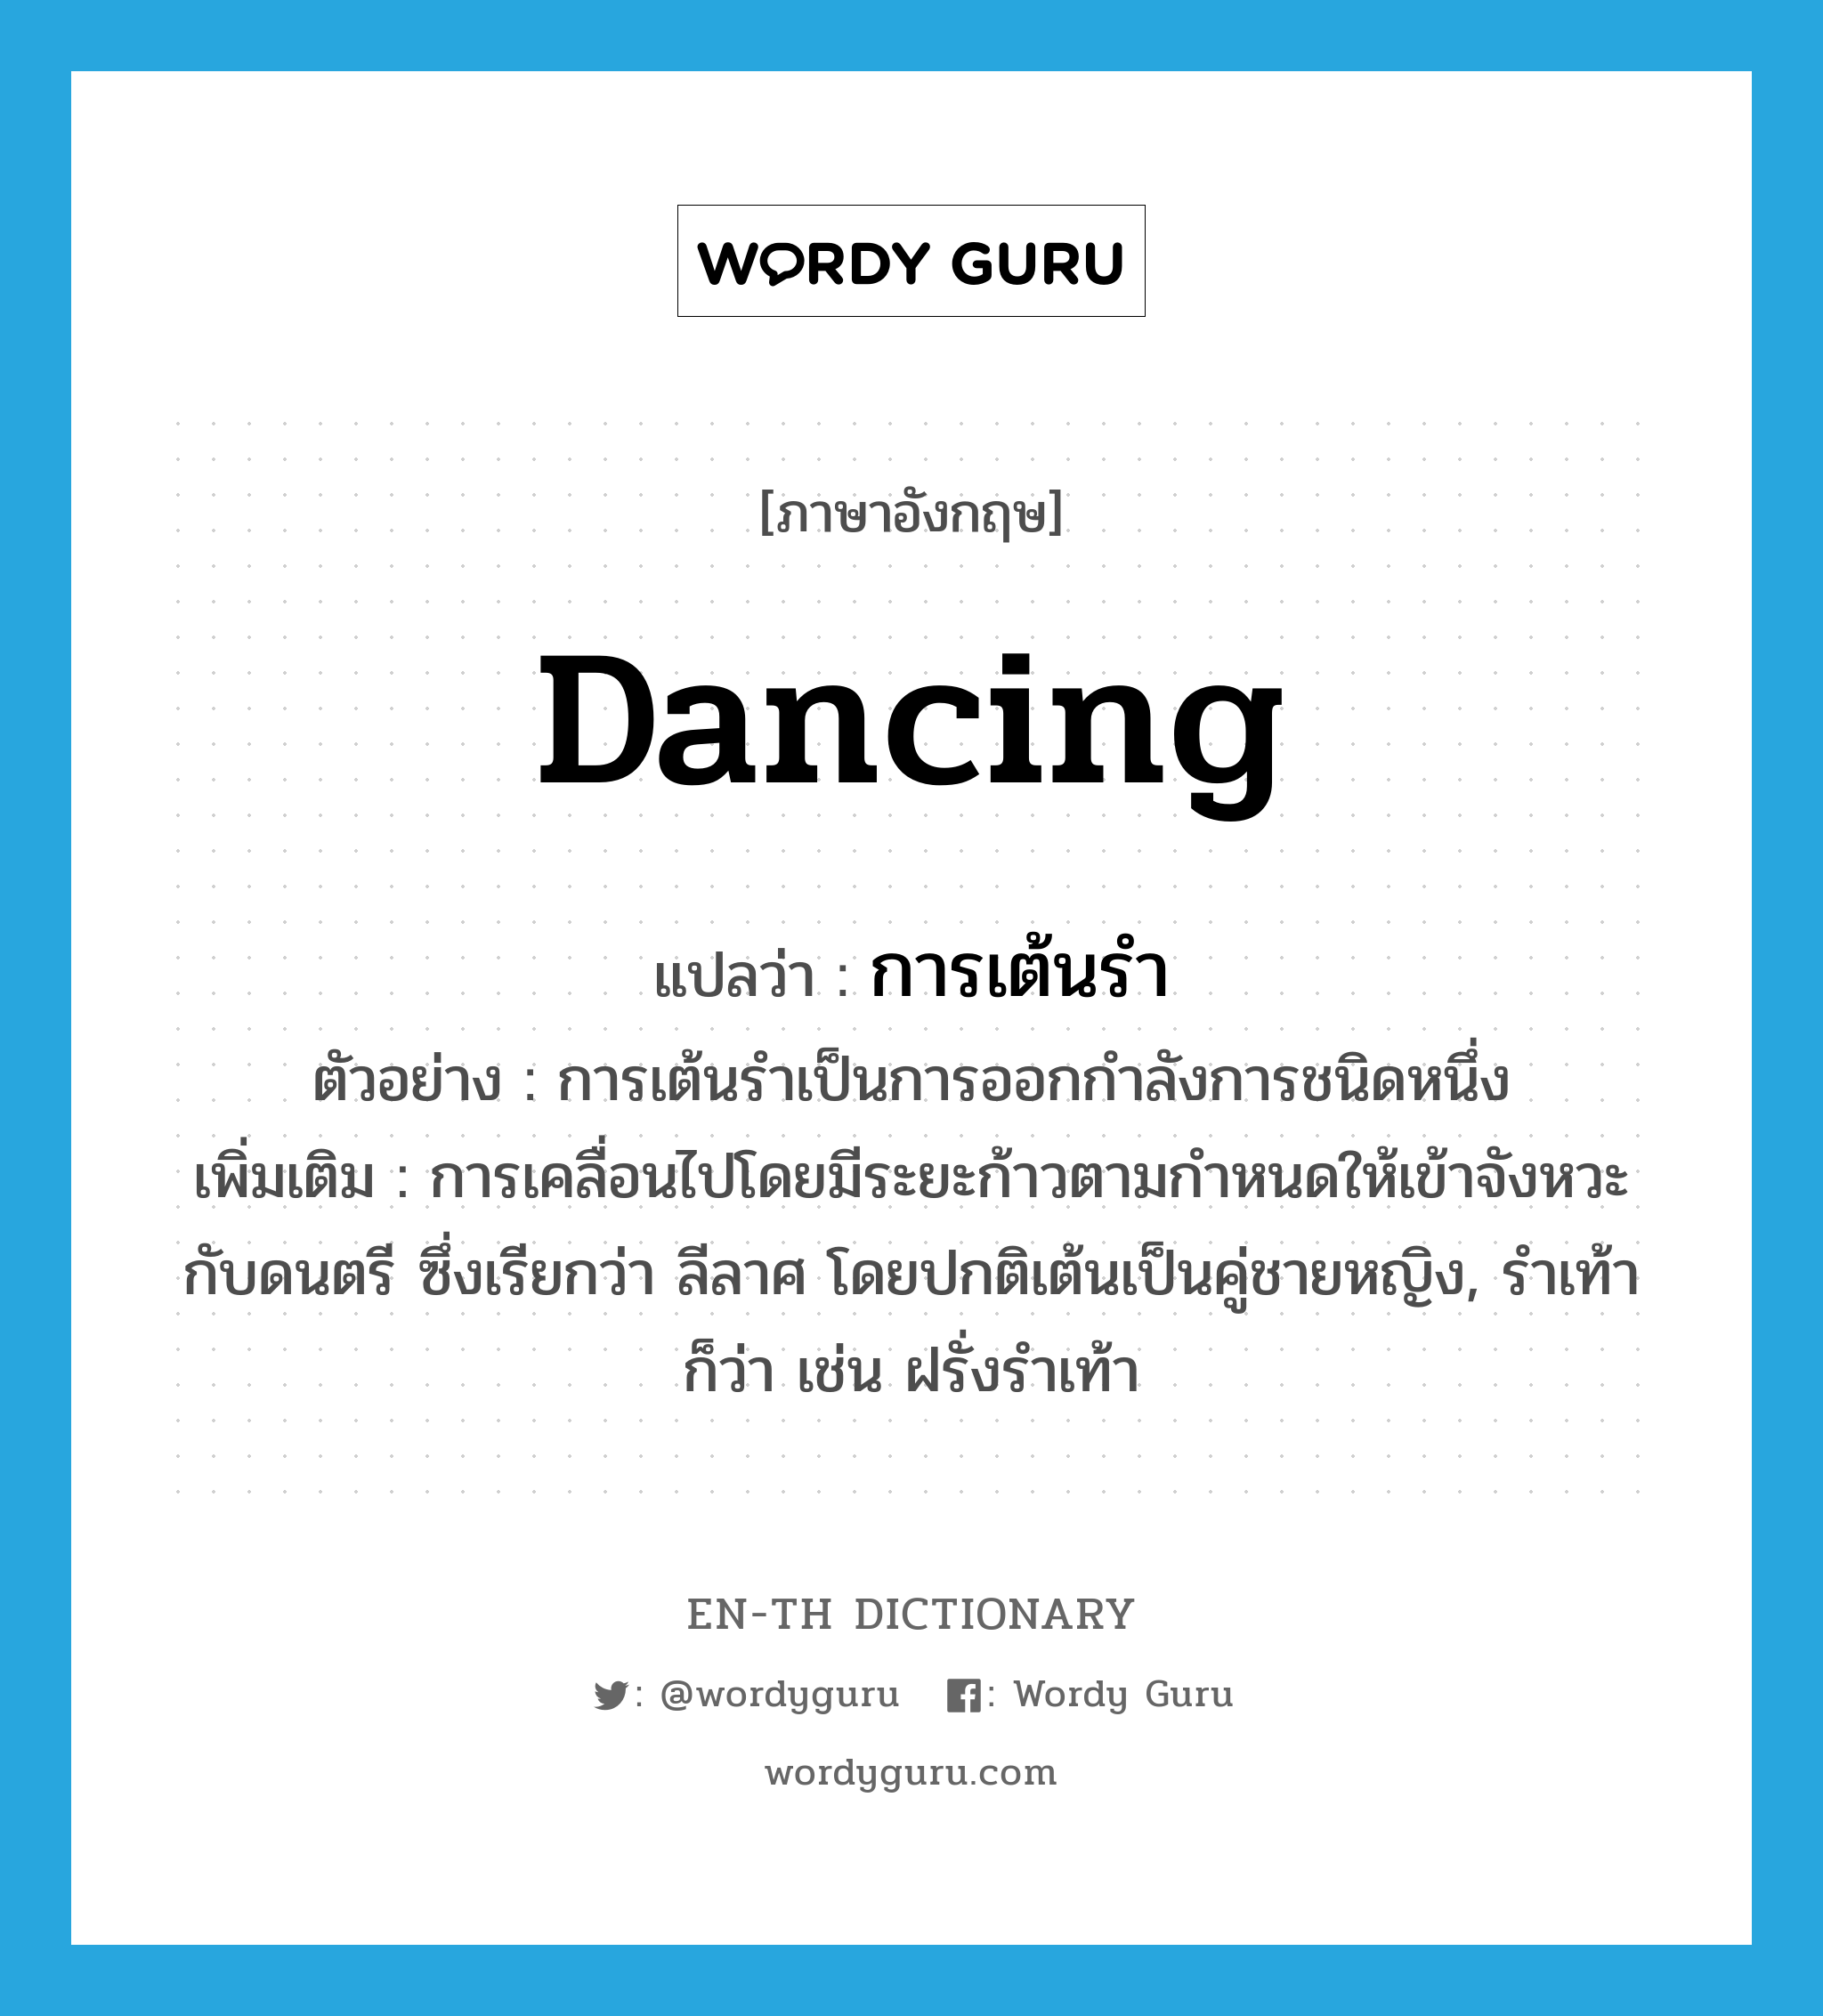 dancing แปลว่า?, คำศัพท์ภาษาอังกฤษ dancing แปลว่า การเต้นรำ ประเภท N ตัวอย่าง การเต้นรำเป็นการออกกำลังการชนิดหนึ่ง เพิ่มเติม การเคลื่อนไปโดยมีระยะก้าวตามกำหนดให้เข้าจังหวะกับดนตรี ซึ่งเรียกว่า ลีลาศ โดยปกติเต้นเป็นคู่ชายหญิง, รำเท้า ก็ว่า เช่น ฝรั่งรำเท้า หมวด N